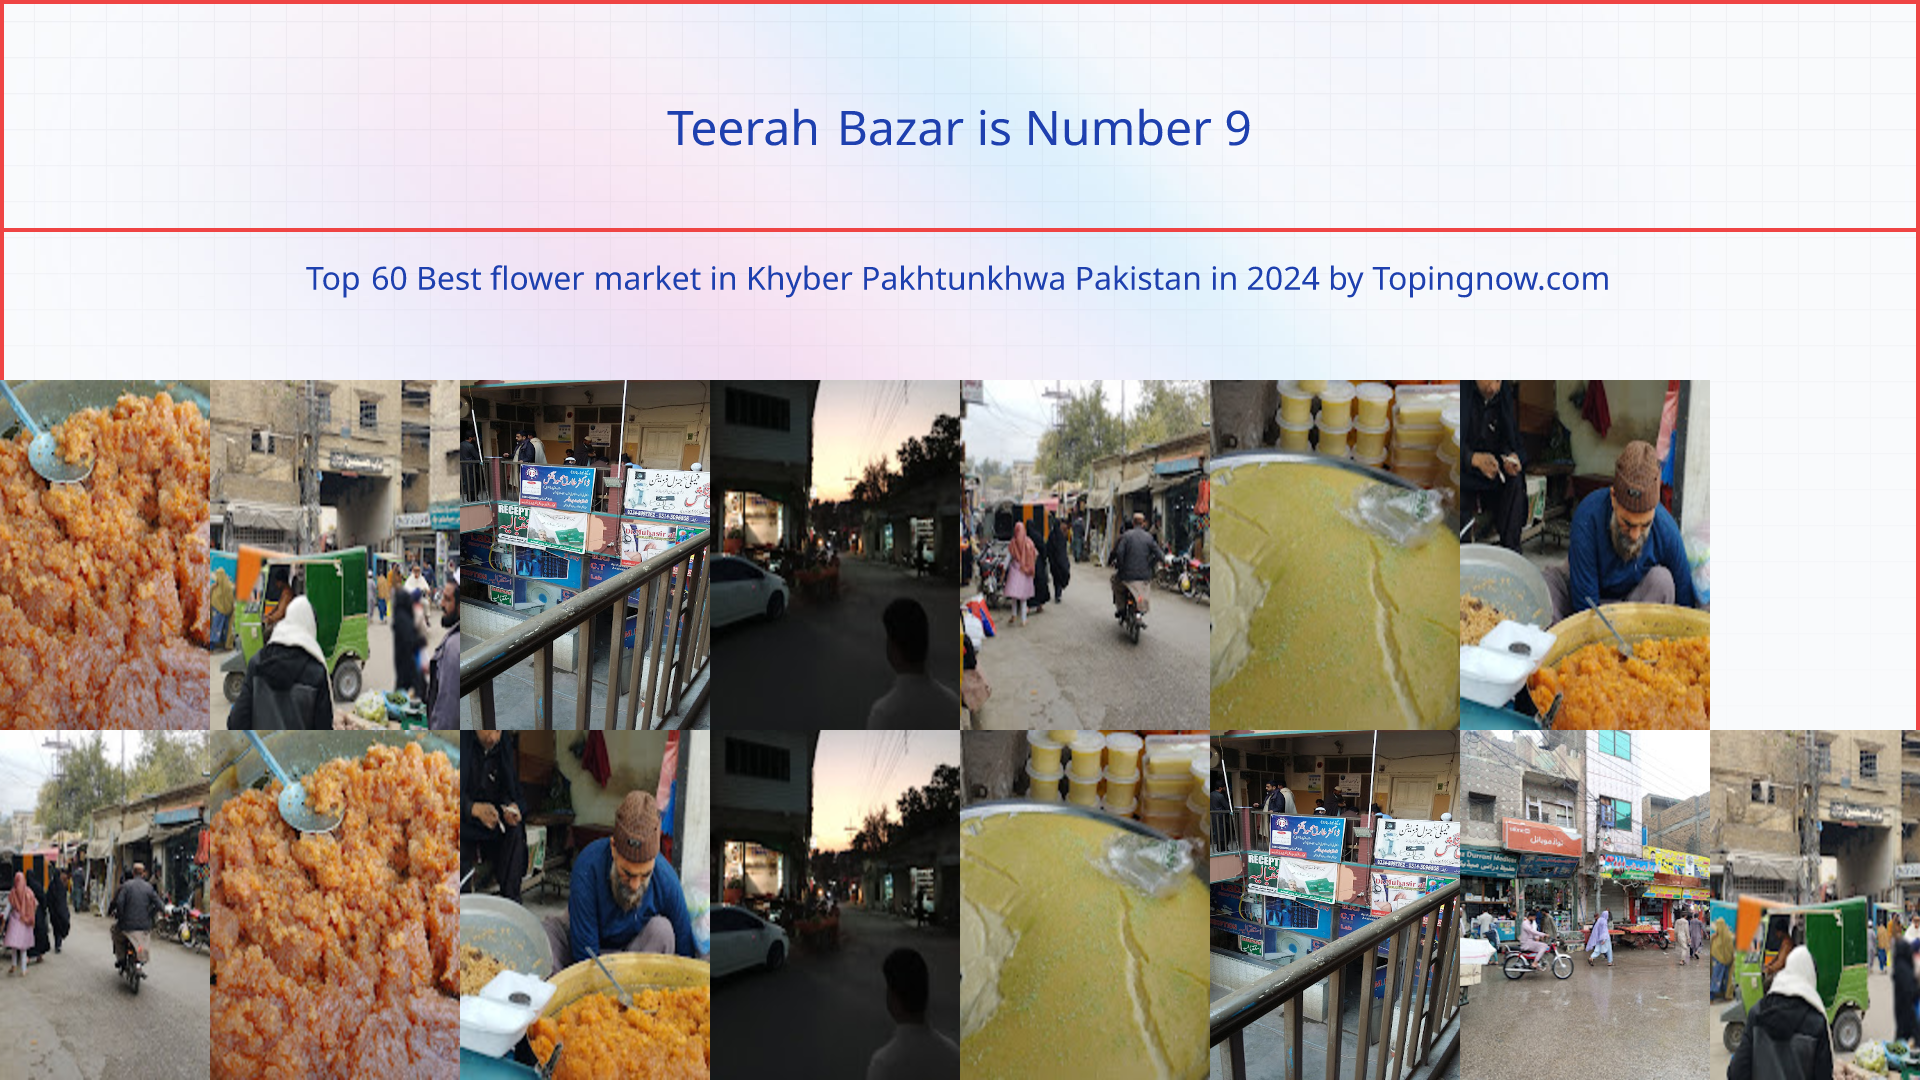 Teerah Bazar: Top 60 Best flower market in Khyber Pakhtunkhwa Pakistan in 2024